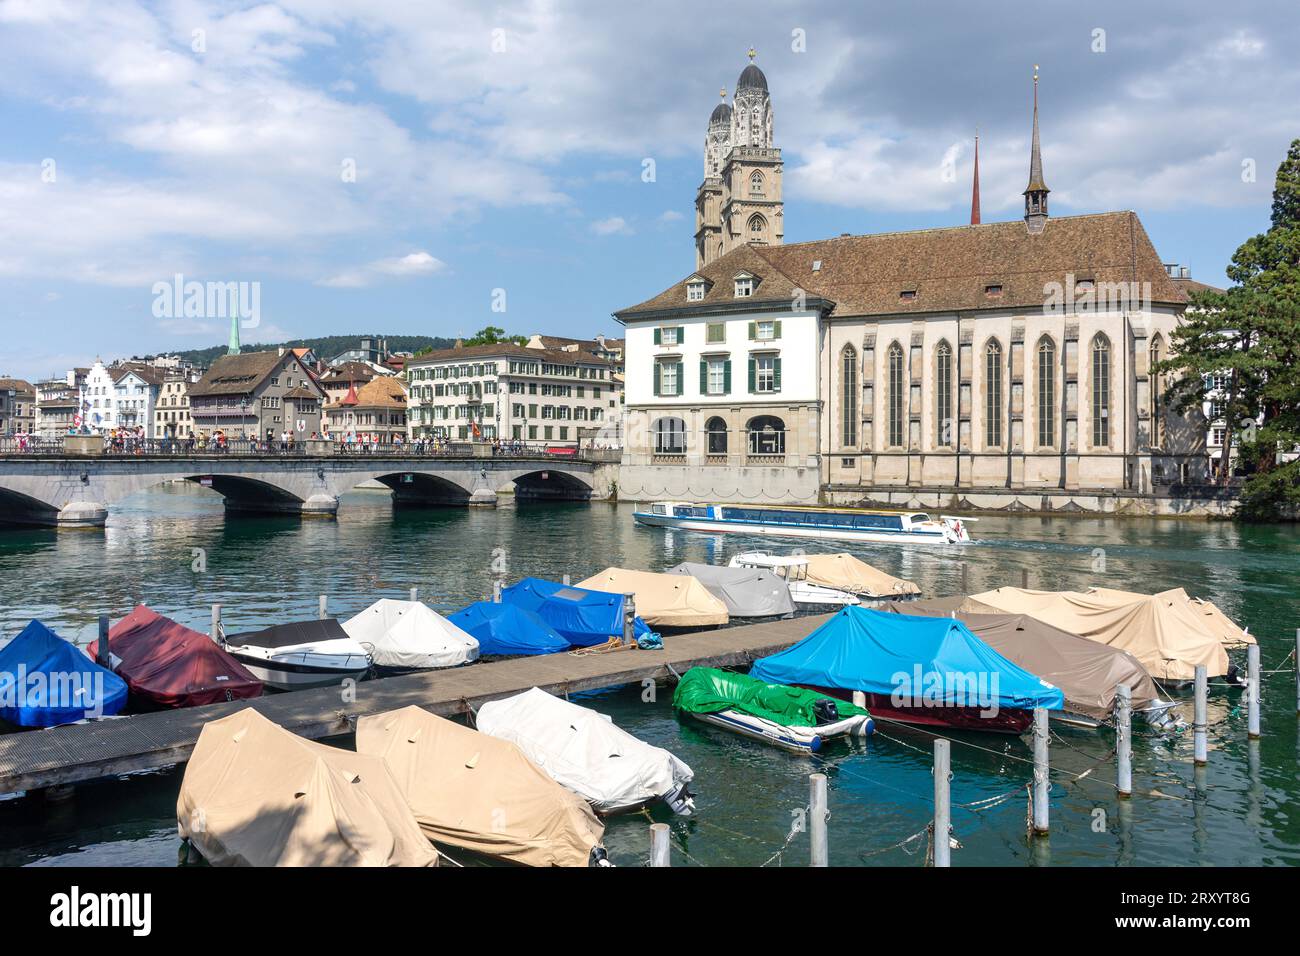 Bateau de croisière sur la rivière Limmat, Altstadt (vieille ville), ville de Zürich, Zürich, Suisse Banque D'Images